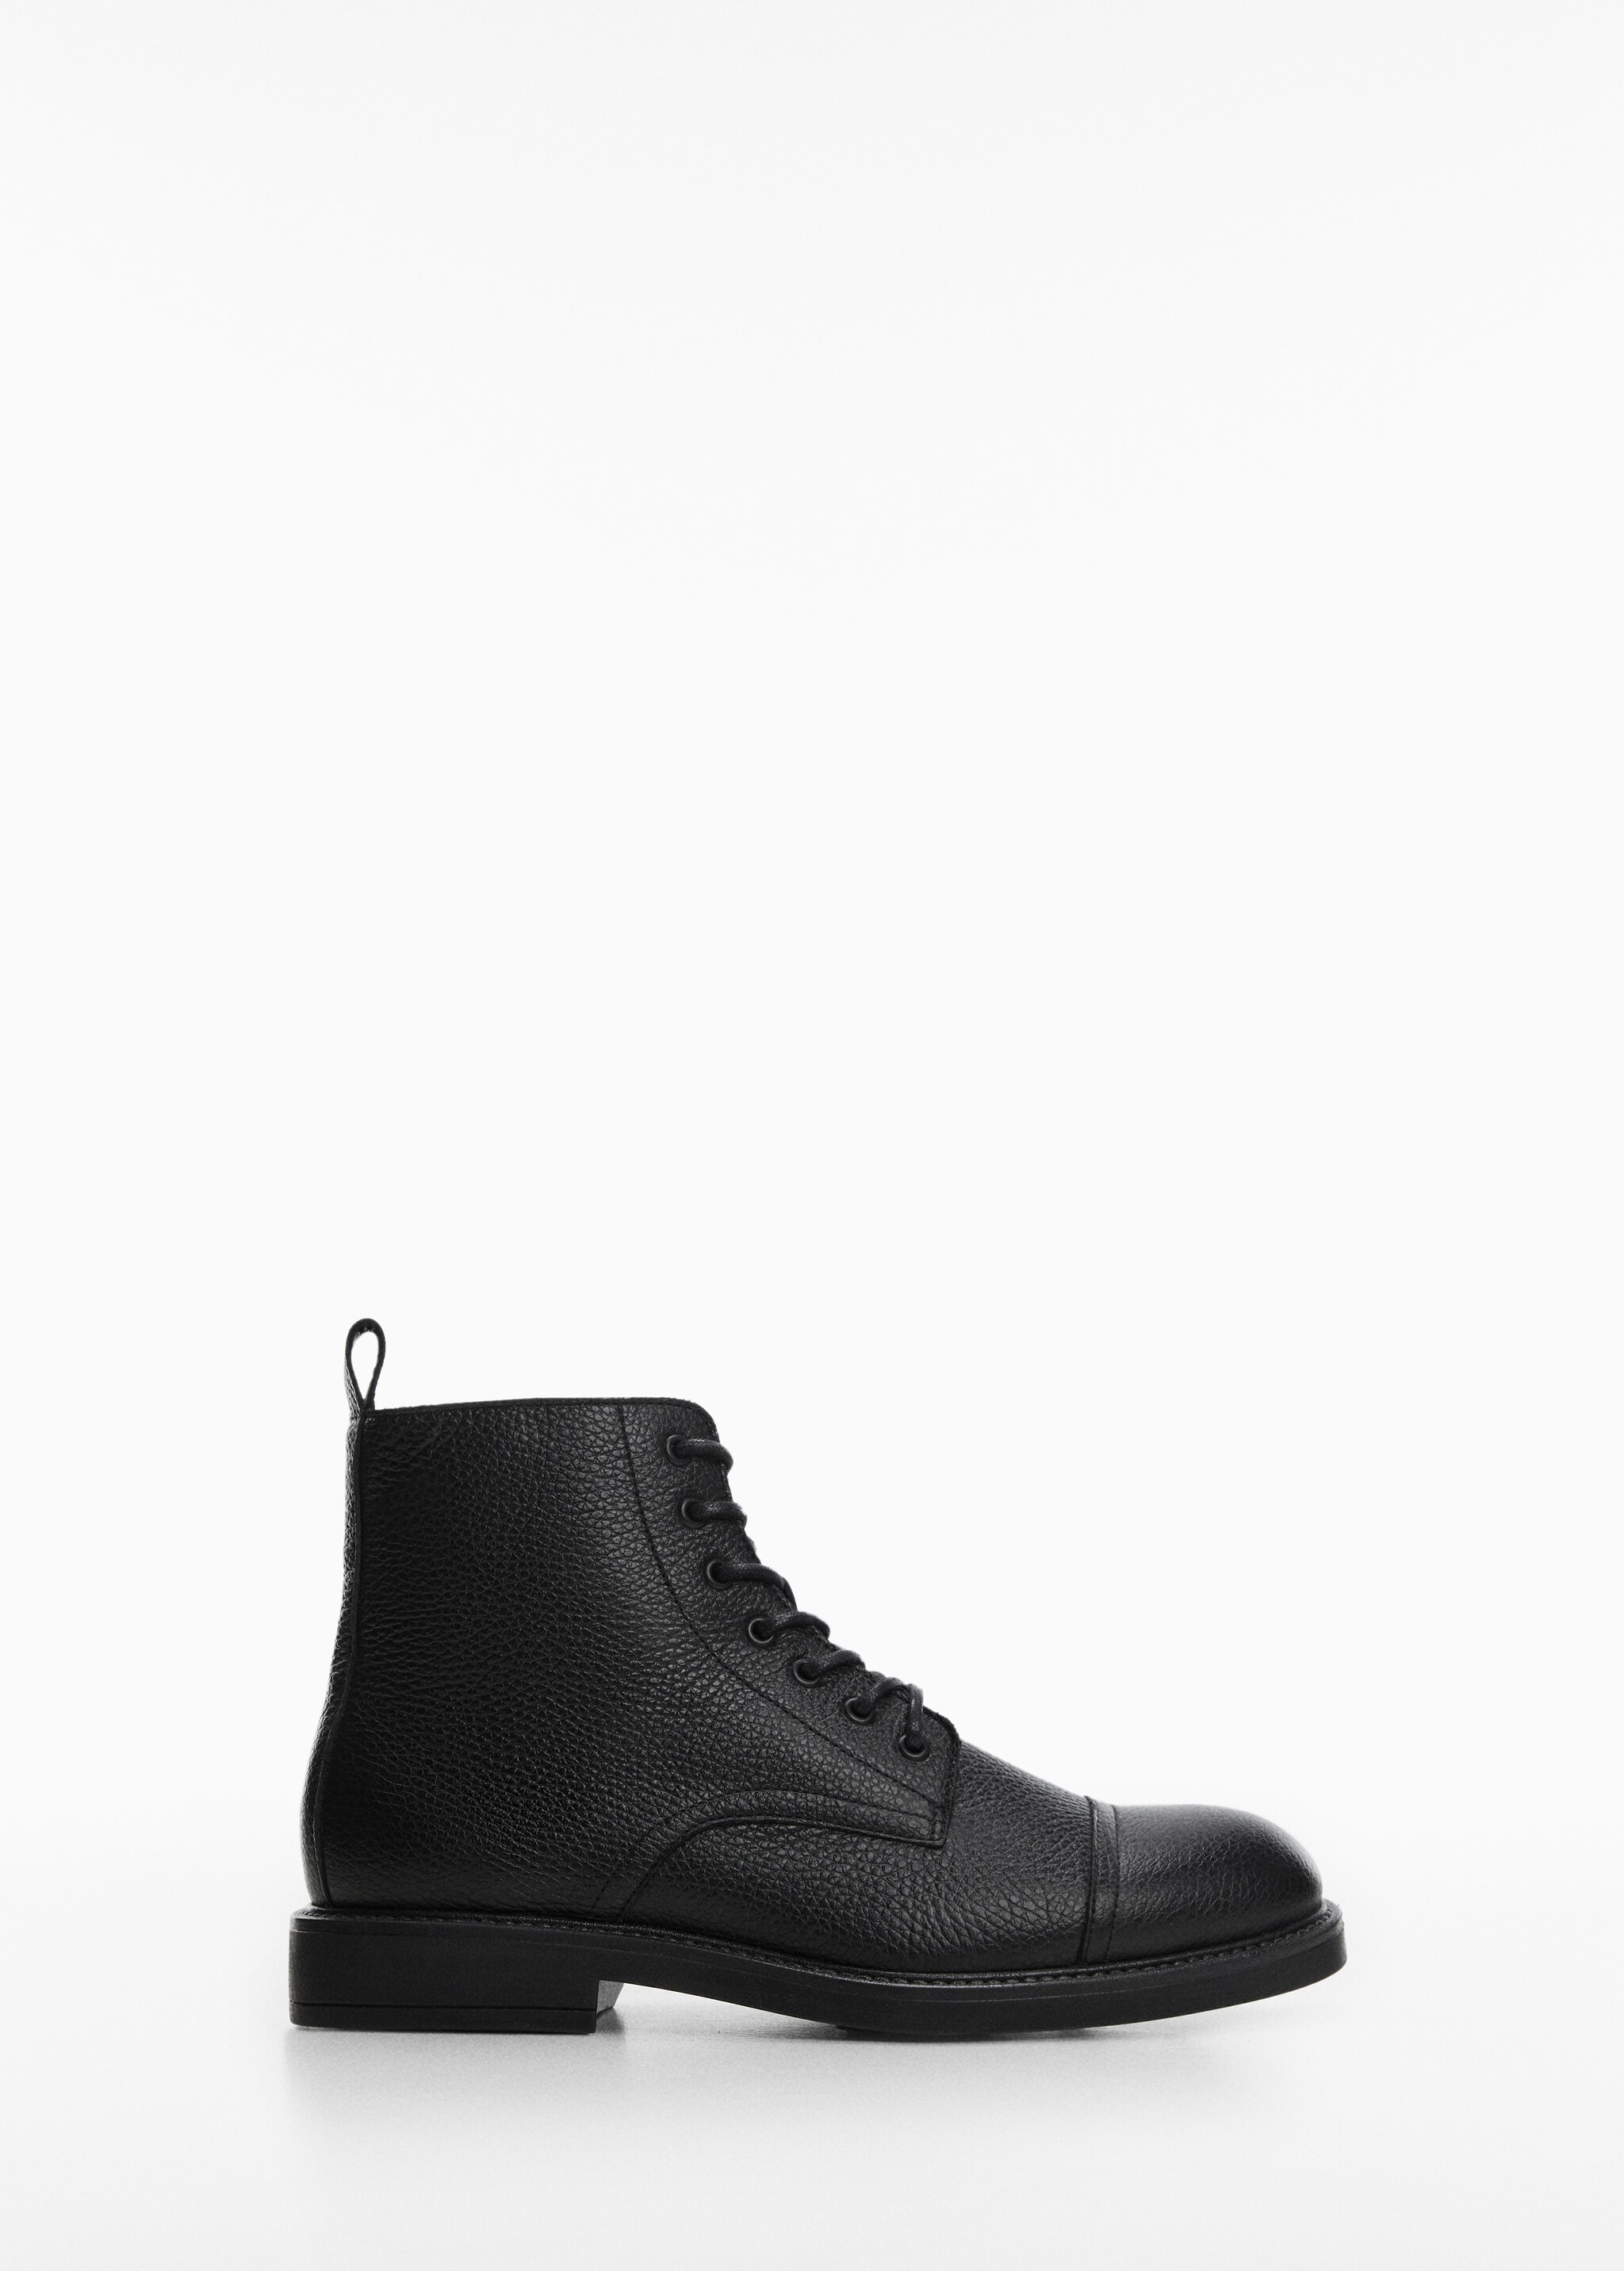 Lace-up leather boots - Articol fără model